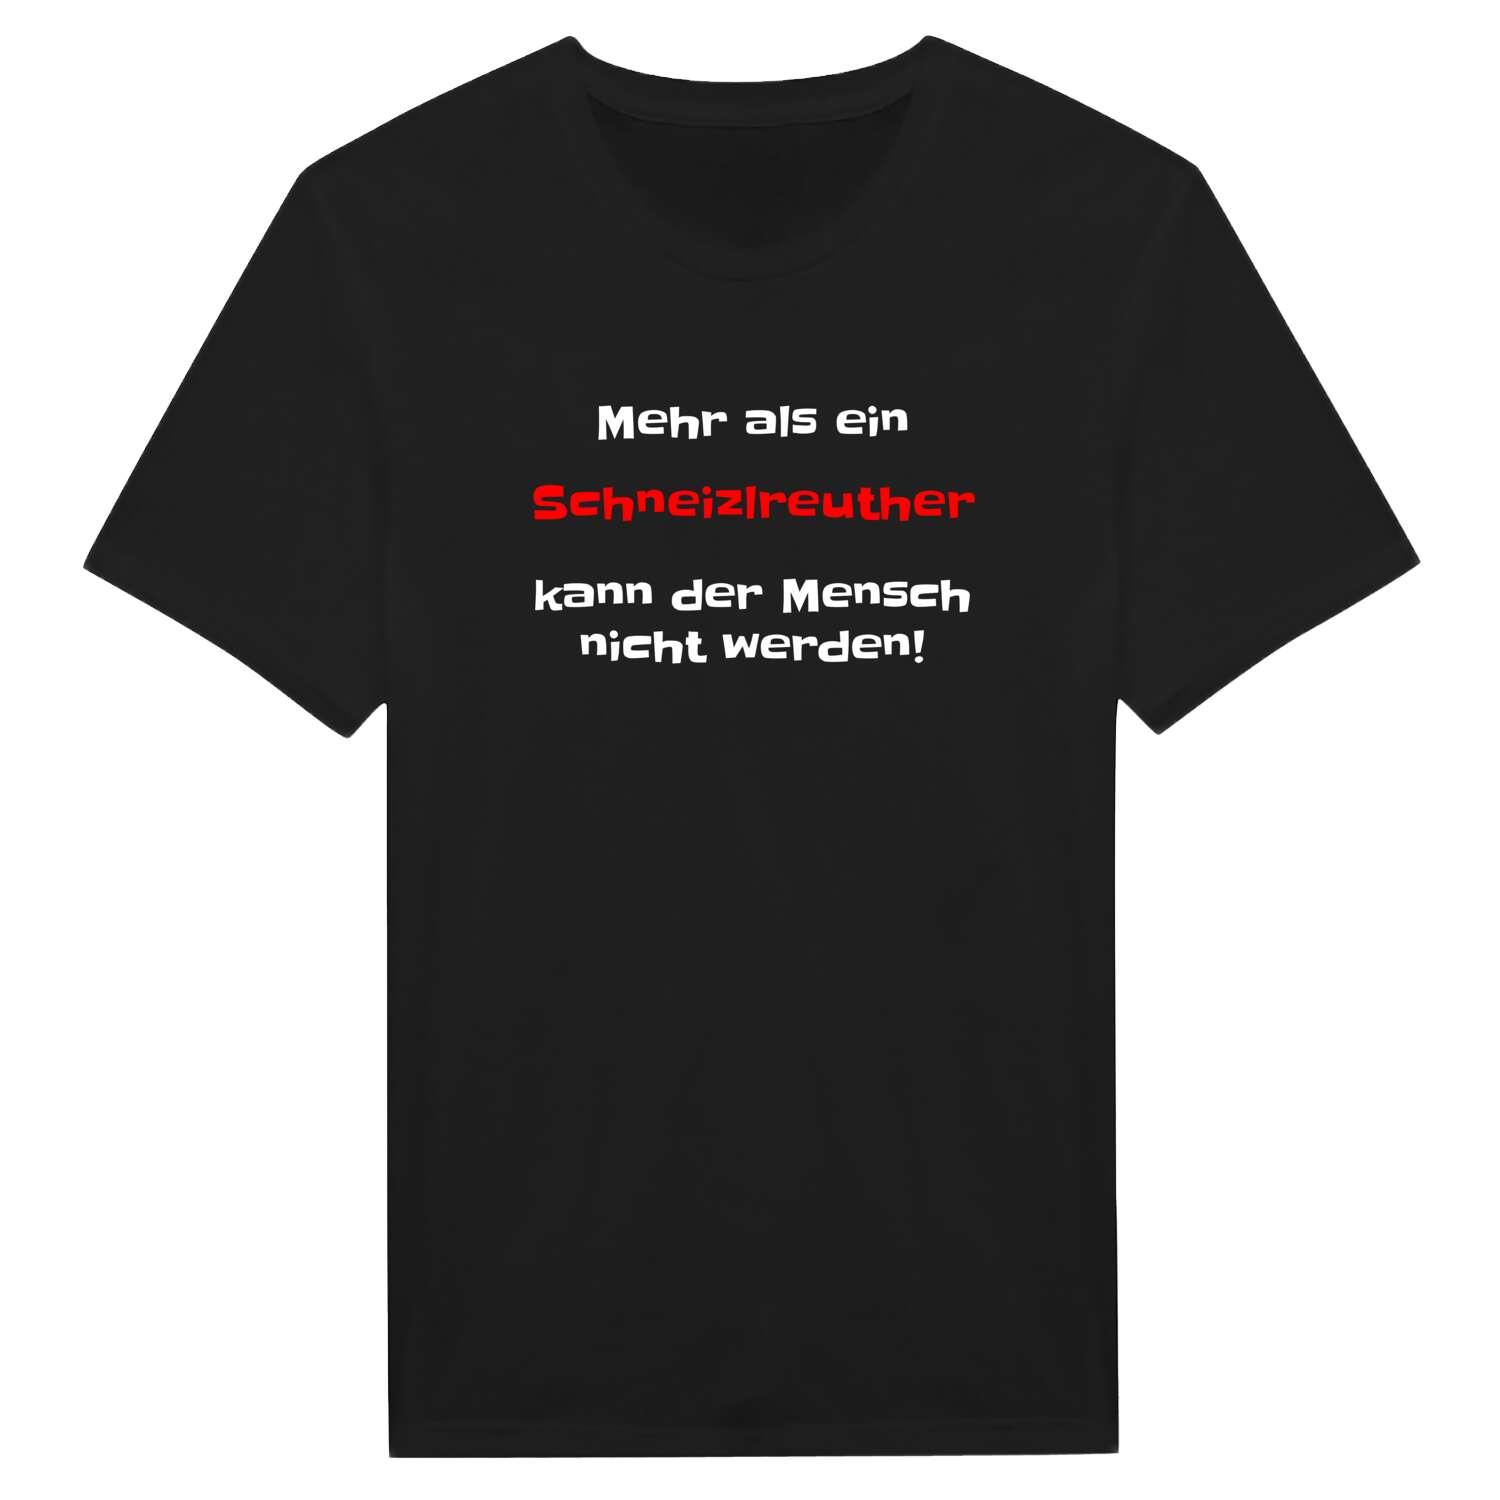 Schneizlreuth T-Shirt »Mehr als ein«